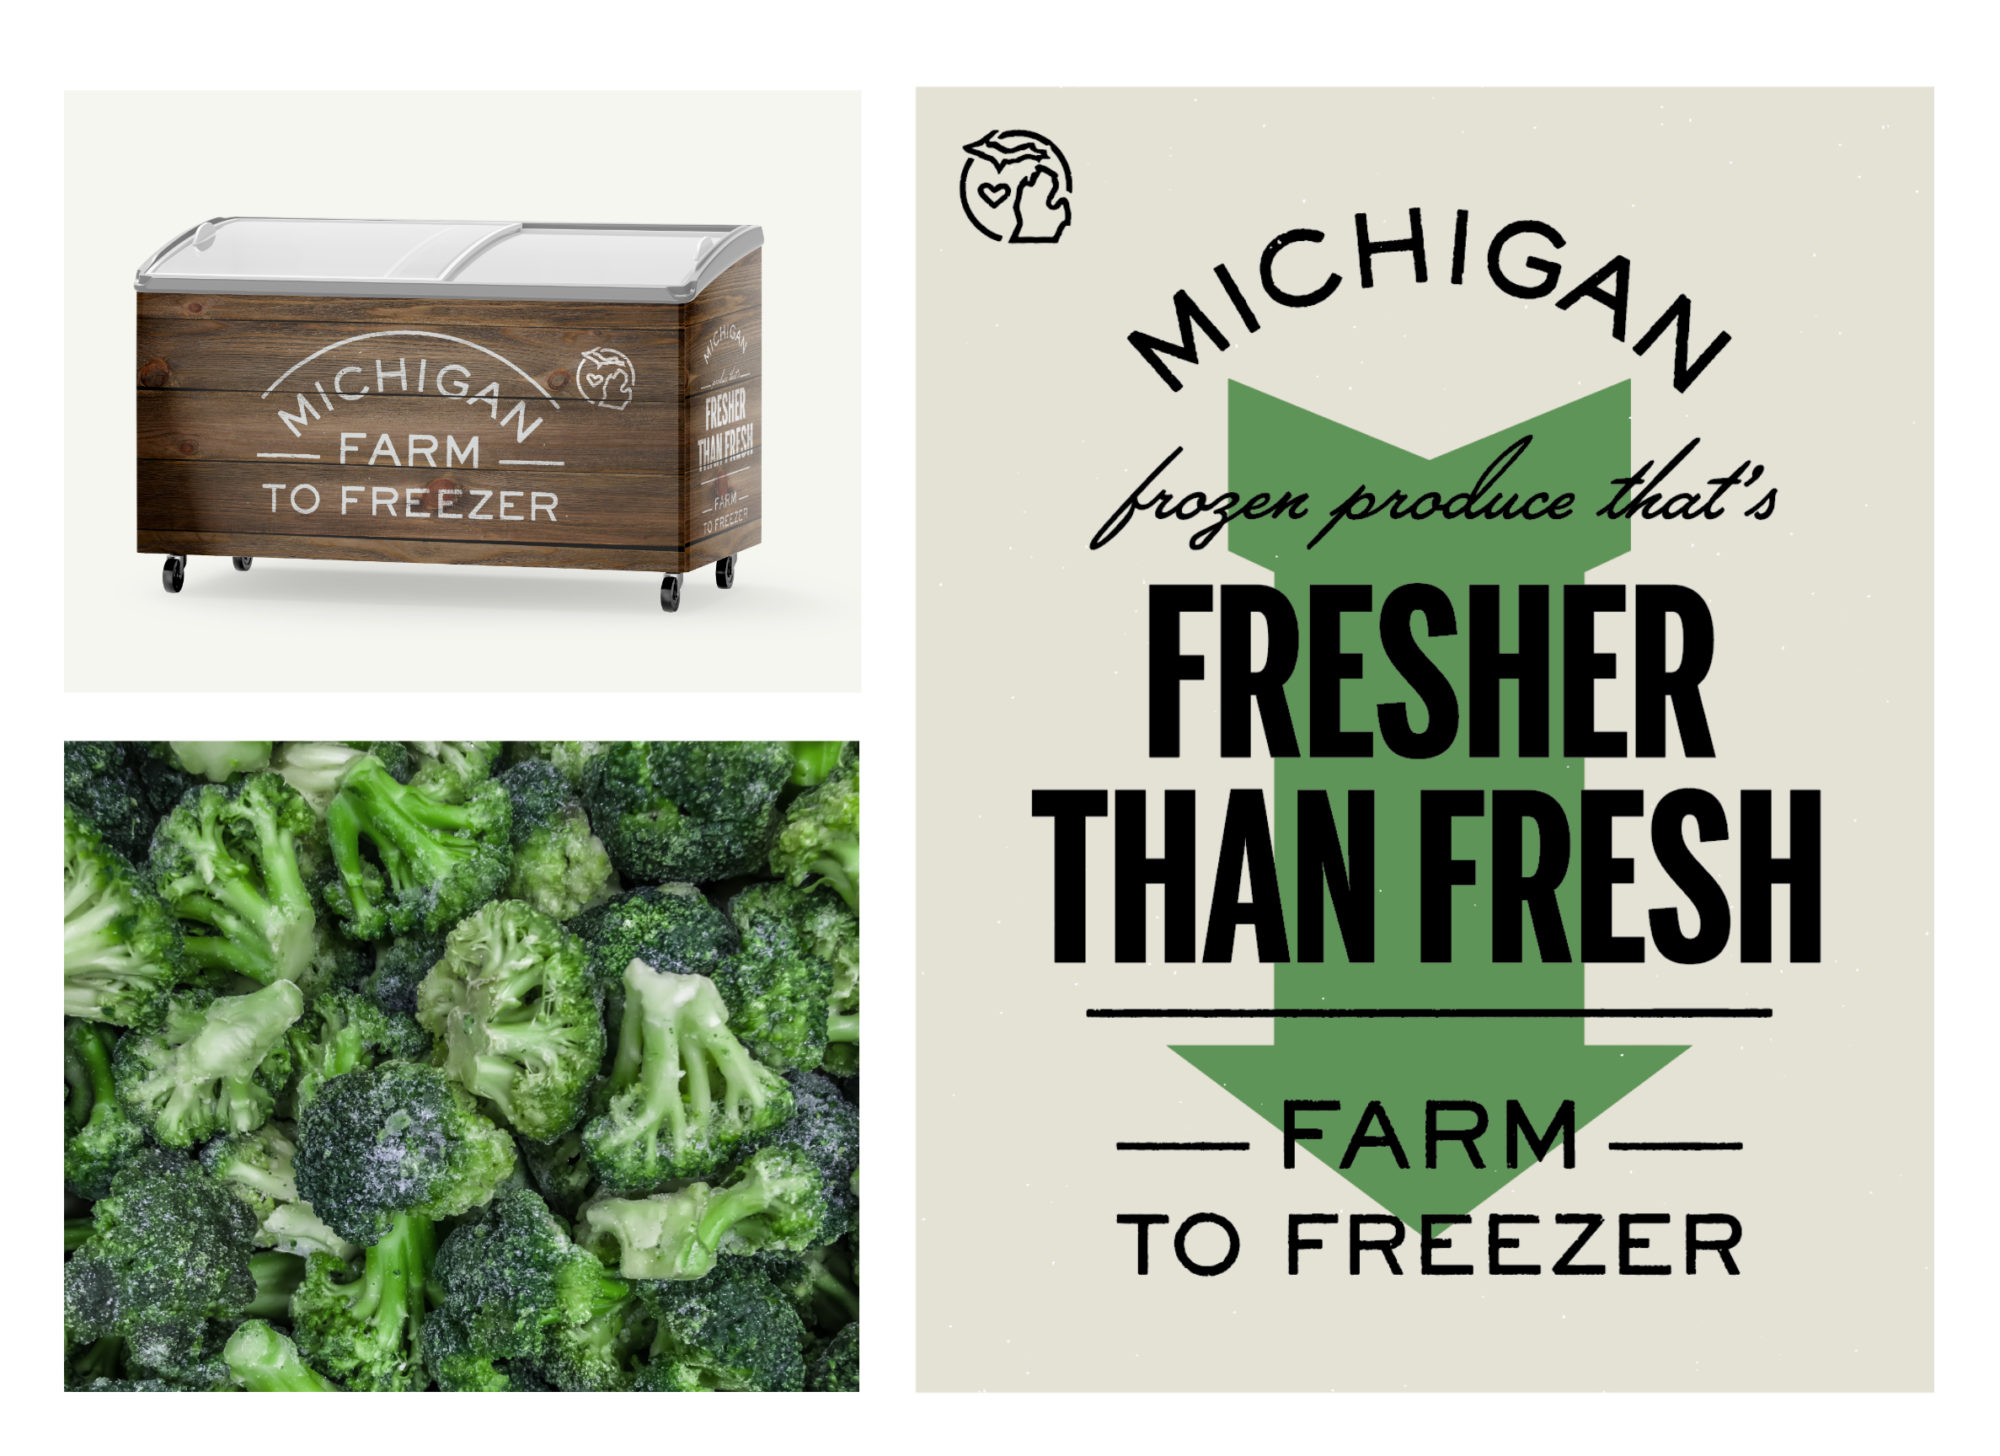 Michigan Farm to Freezer